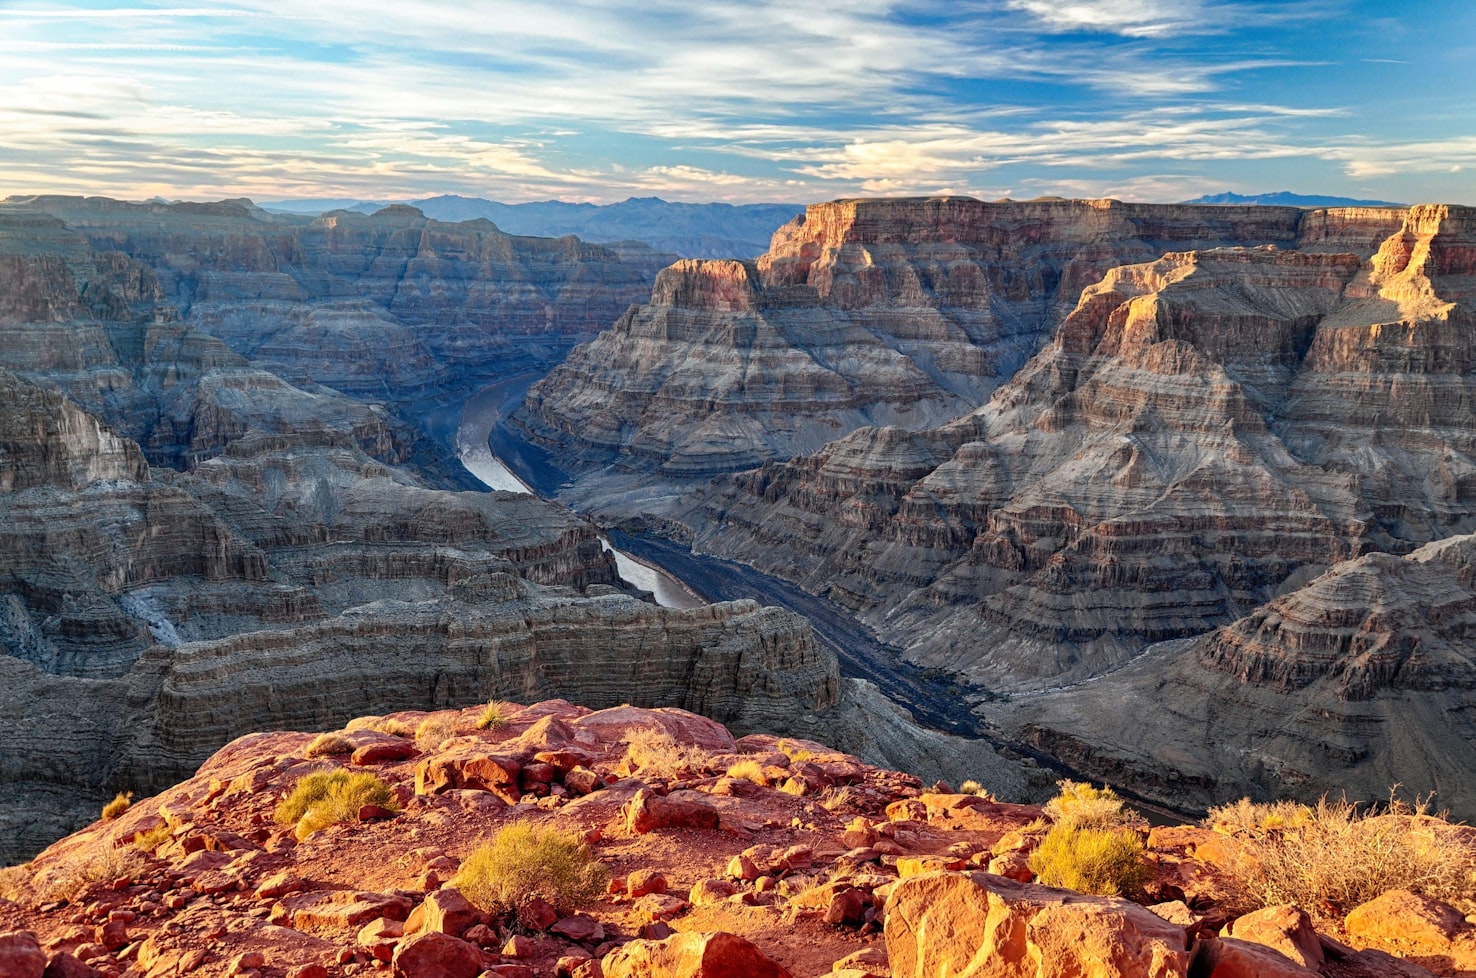 World Heritage Sites, Büyük Kanyon, Grand Canyon, United States